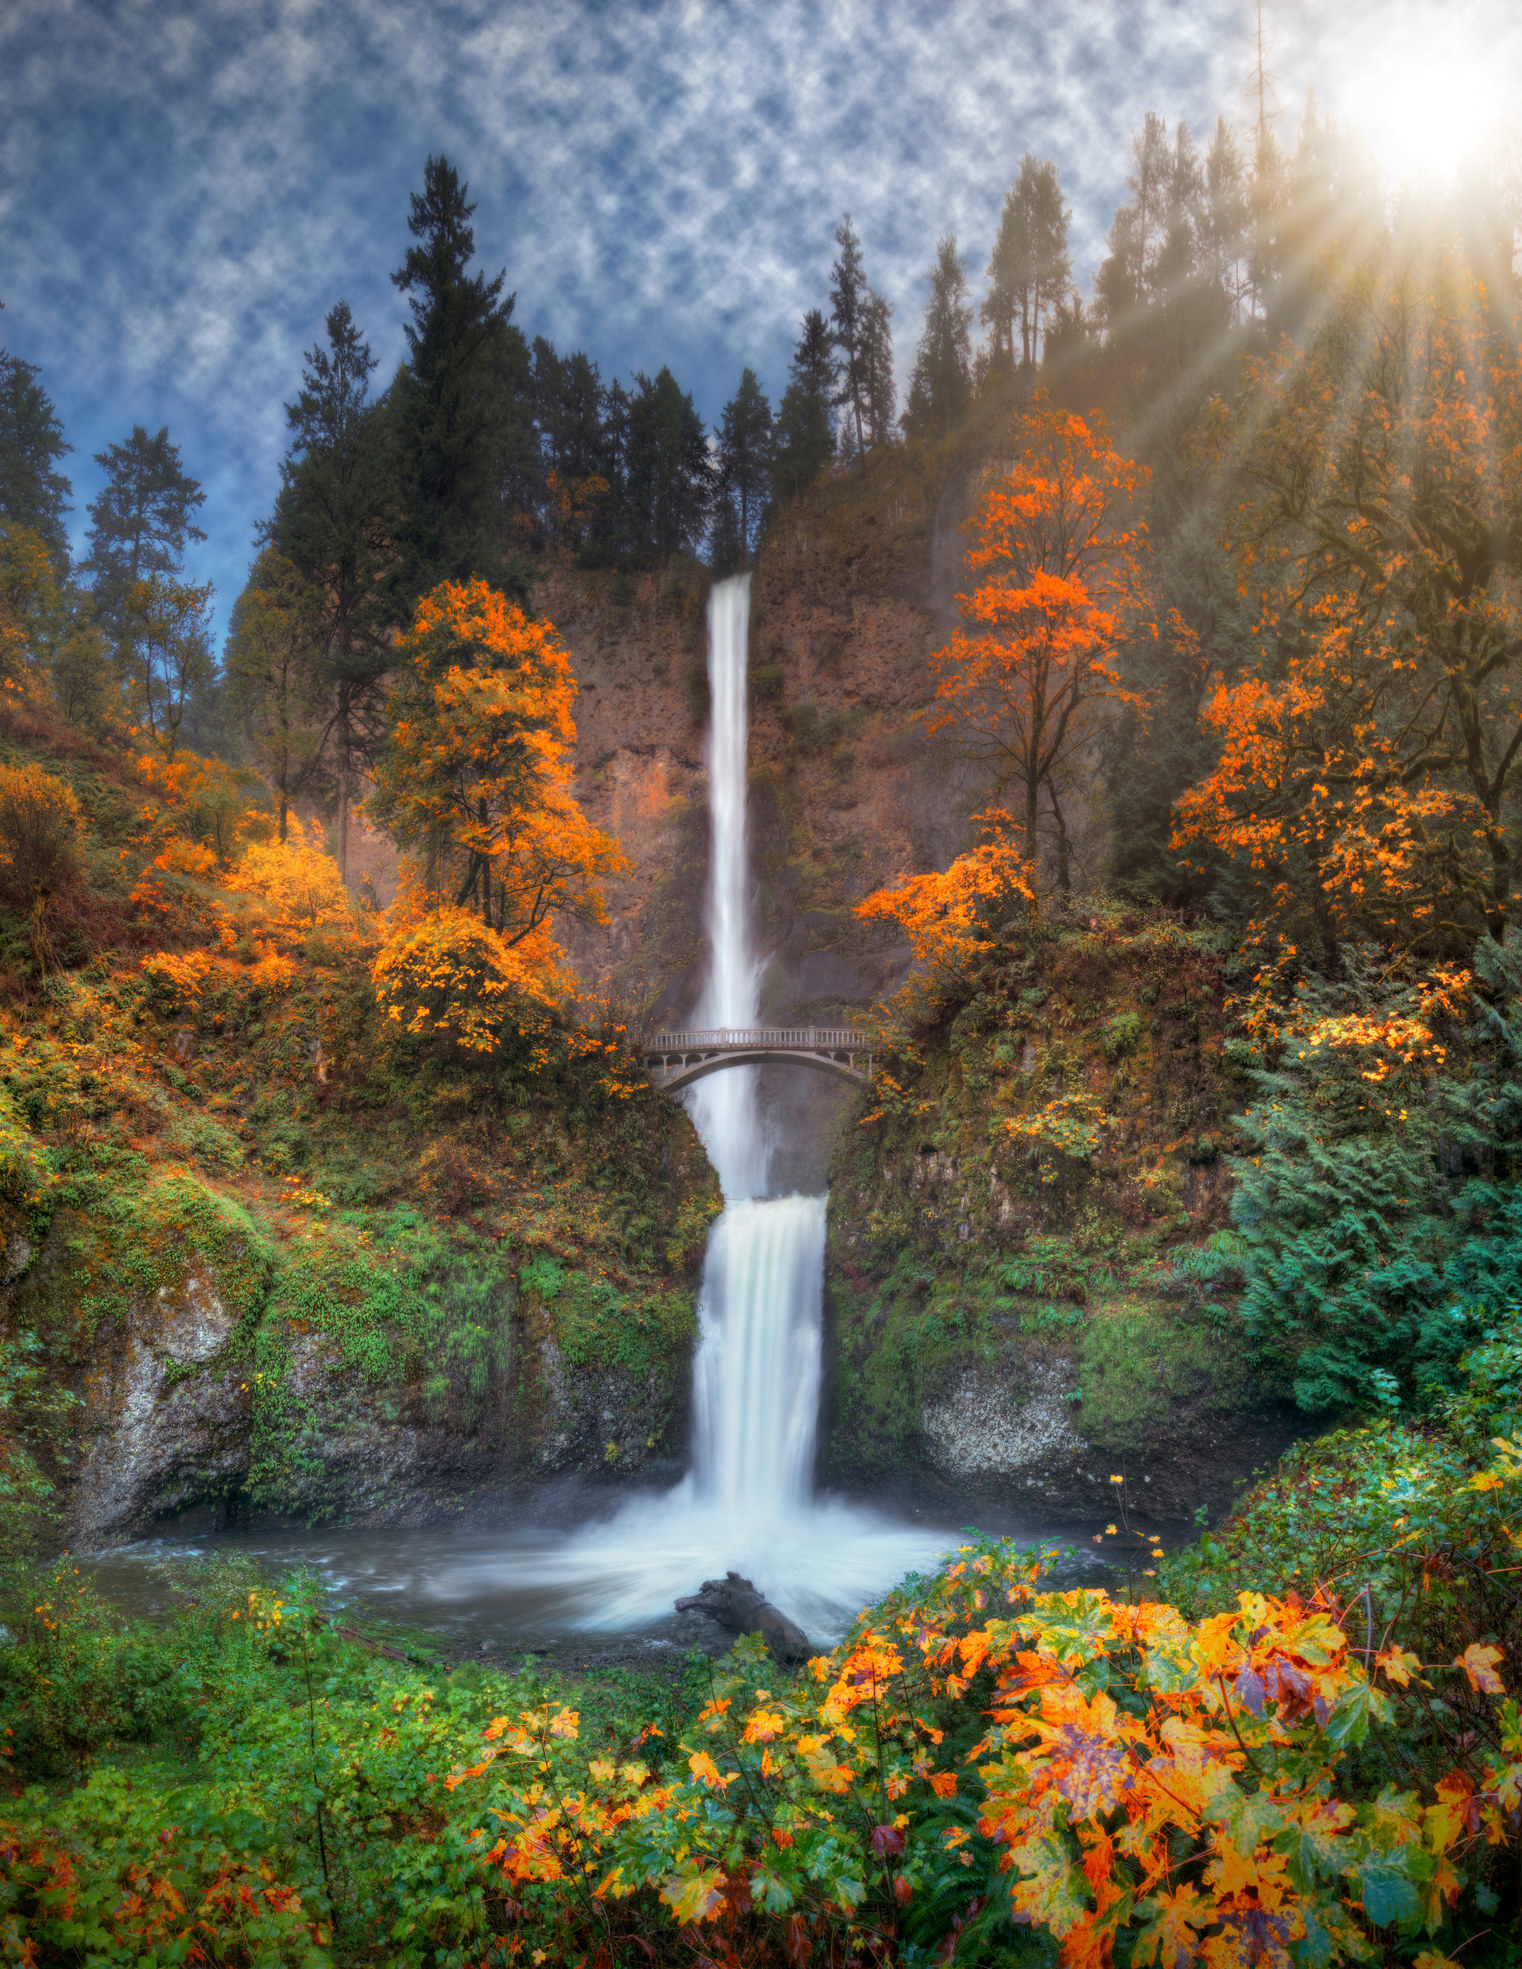 Multnomah Falls in autumn colors.